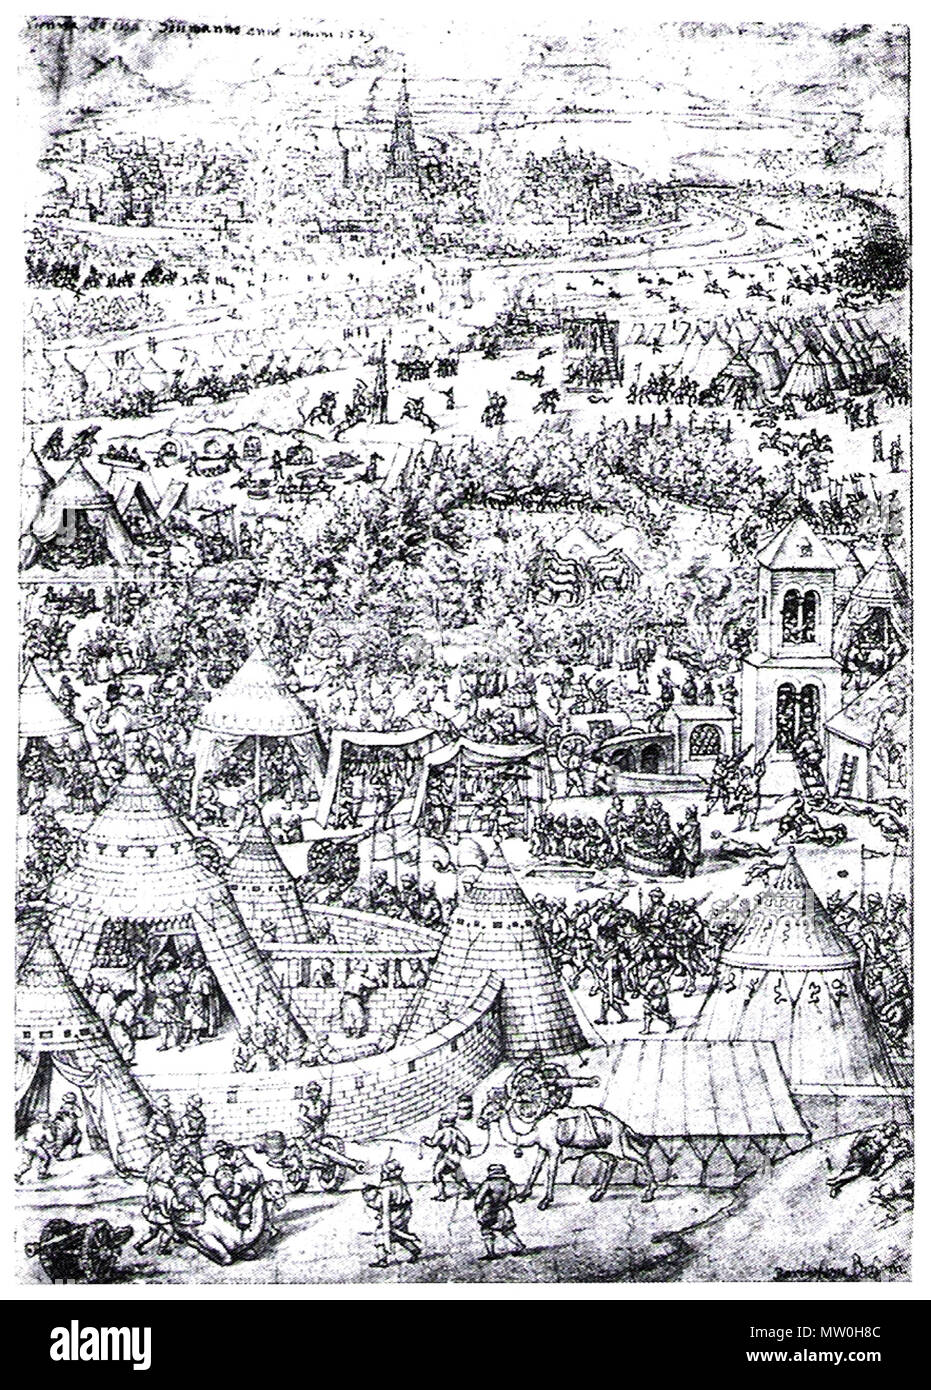 . English: en:Engraving of the Siege of Vienna (1529) Deutsch: Erste Wiener Türkenbelagerung, zeitgenössische Darstellung von Bartholomäus Beham (1502-1540) . Bartholomäus Beham 557 Siegeofvienna-1529 Stock Photo